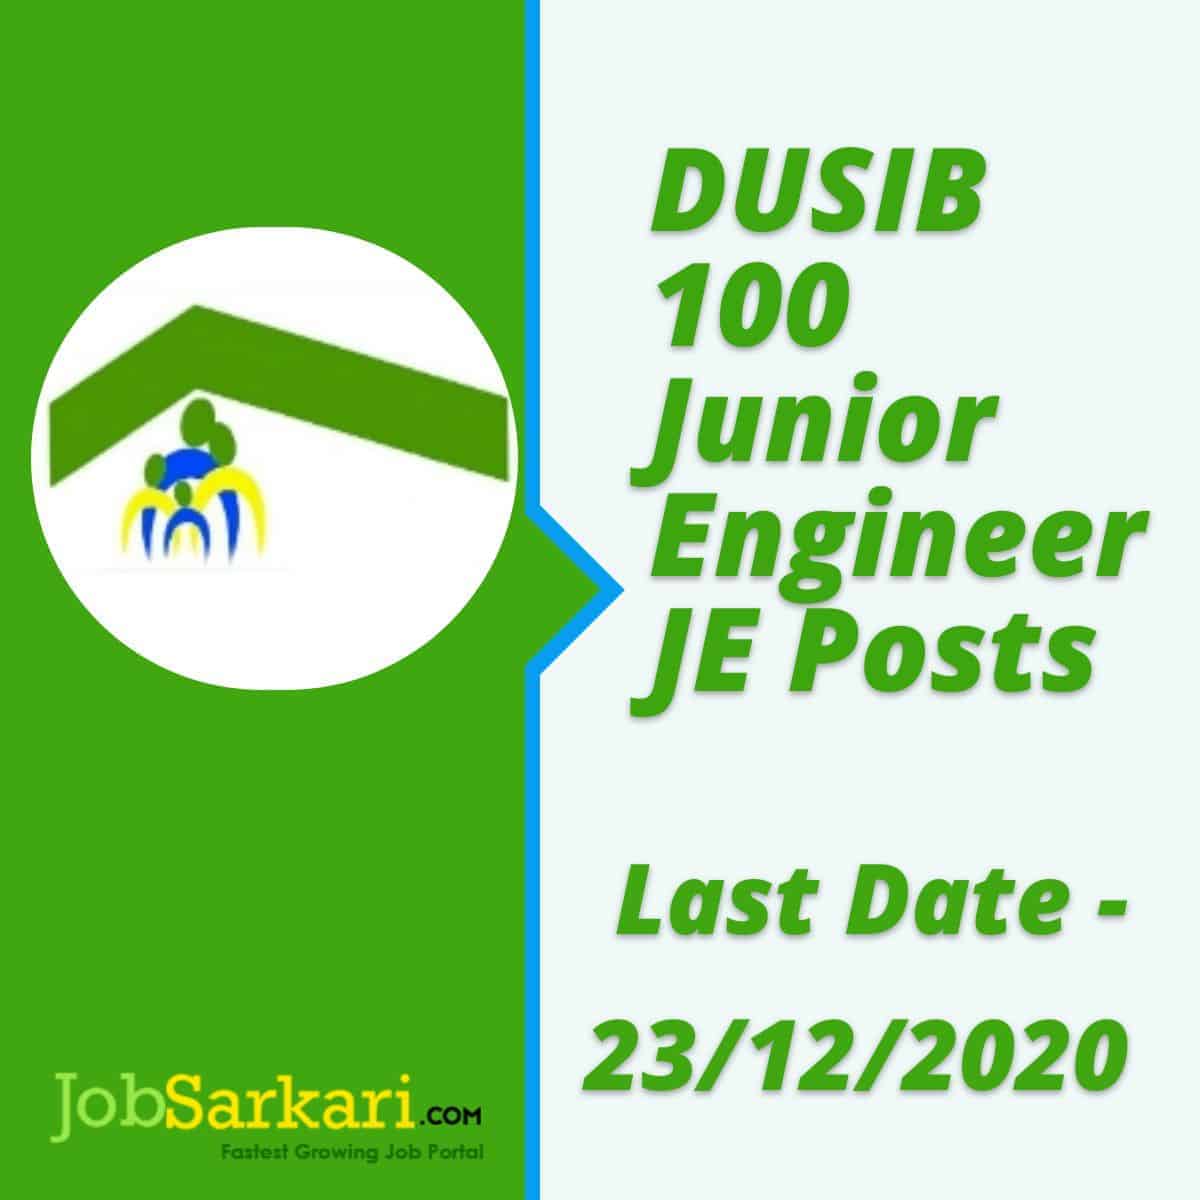 DUSIB 100 Junior Engineer JE Posts